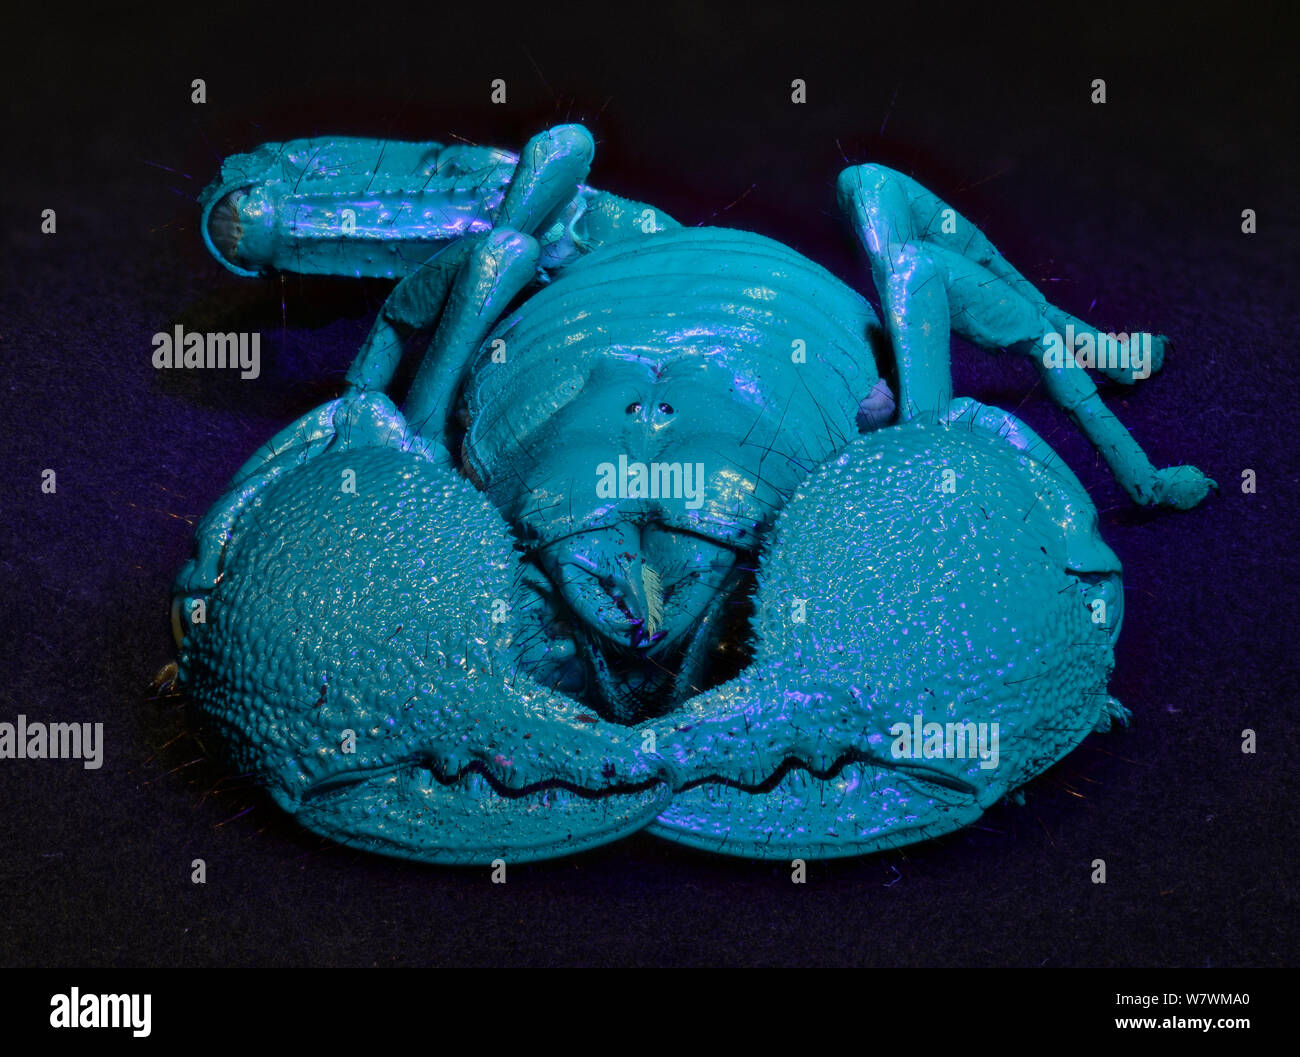 Kaiser-Skorpion (Pandinus Imperator) leuchtenden blau unter UV-Licht,  gefangen Stockfotografie - Alamy